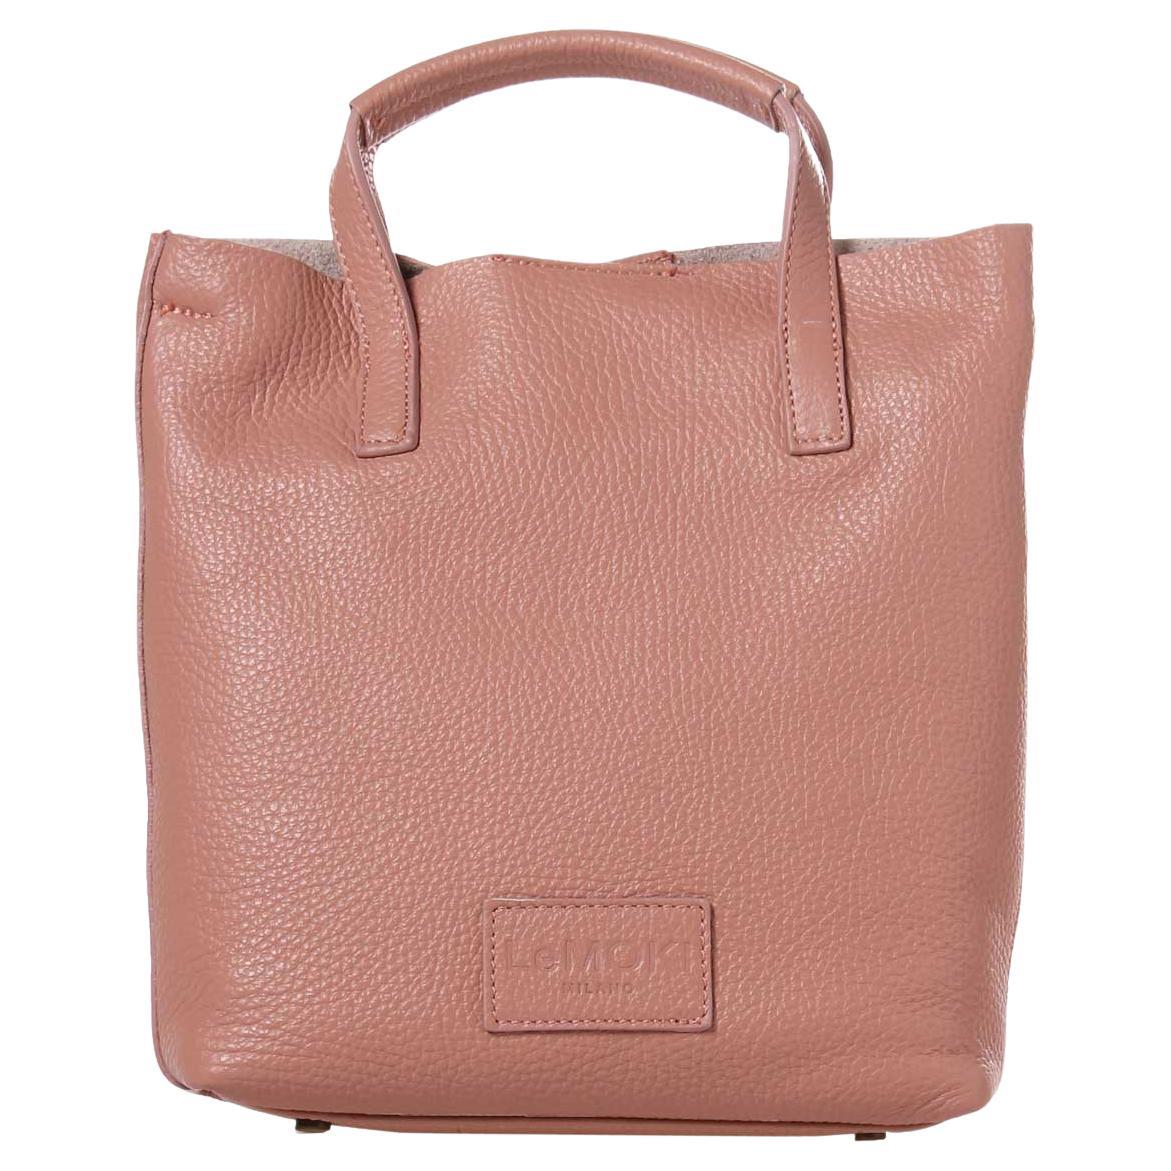 Pink leather handbag shoulder bag NWOT